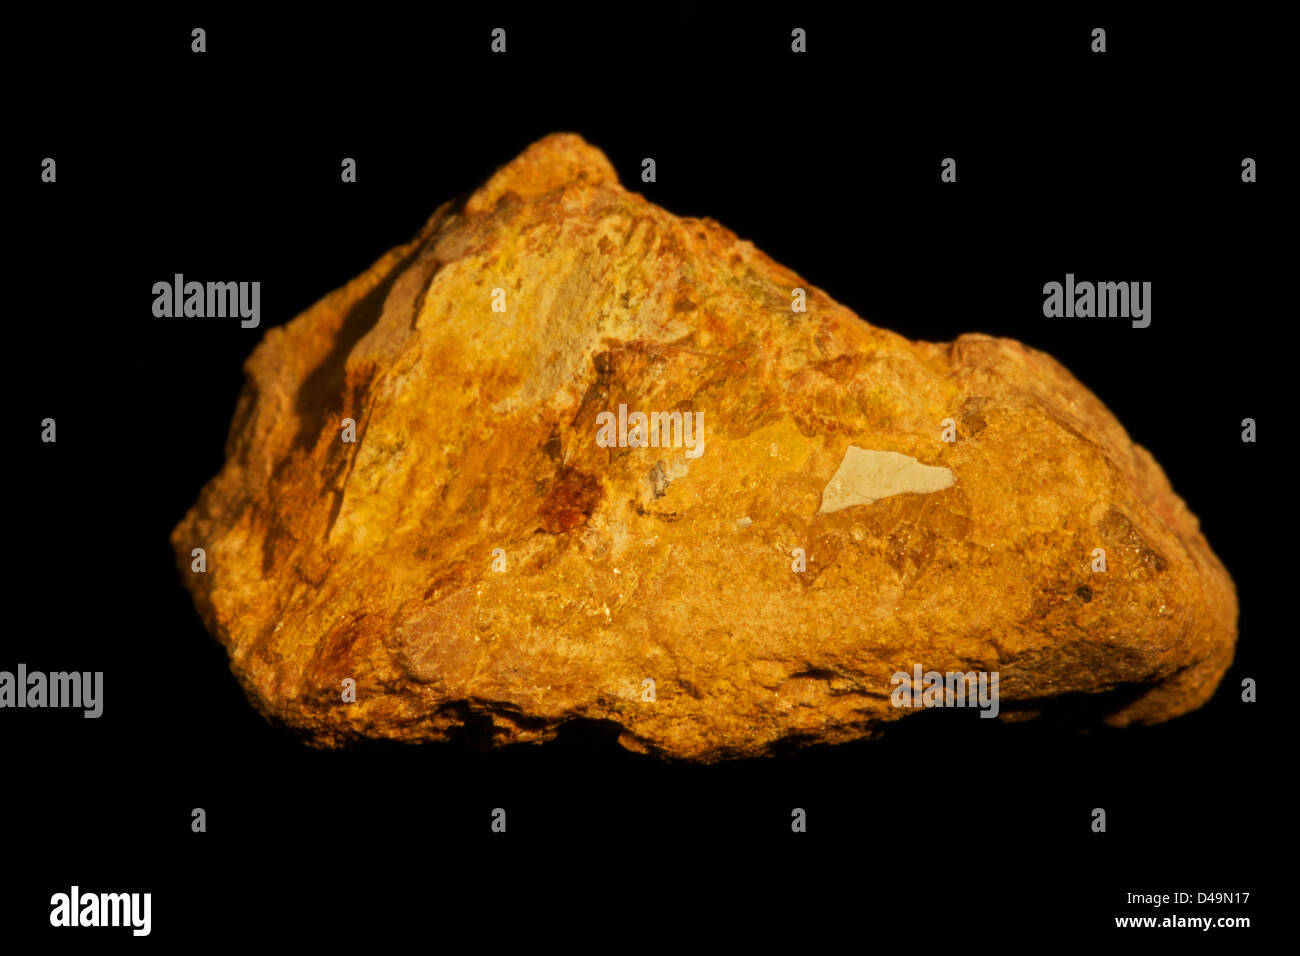 Samarskite(Y) radioaktive seltene Erden Mineral, Erz Mineral von Seltenerd-Element Yttrium, Madagaskar Stockfoto